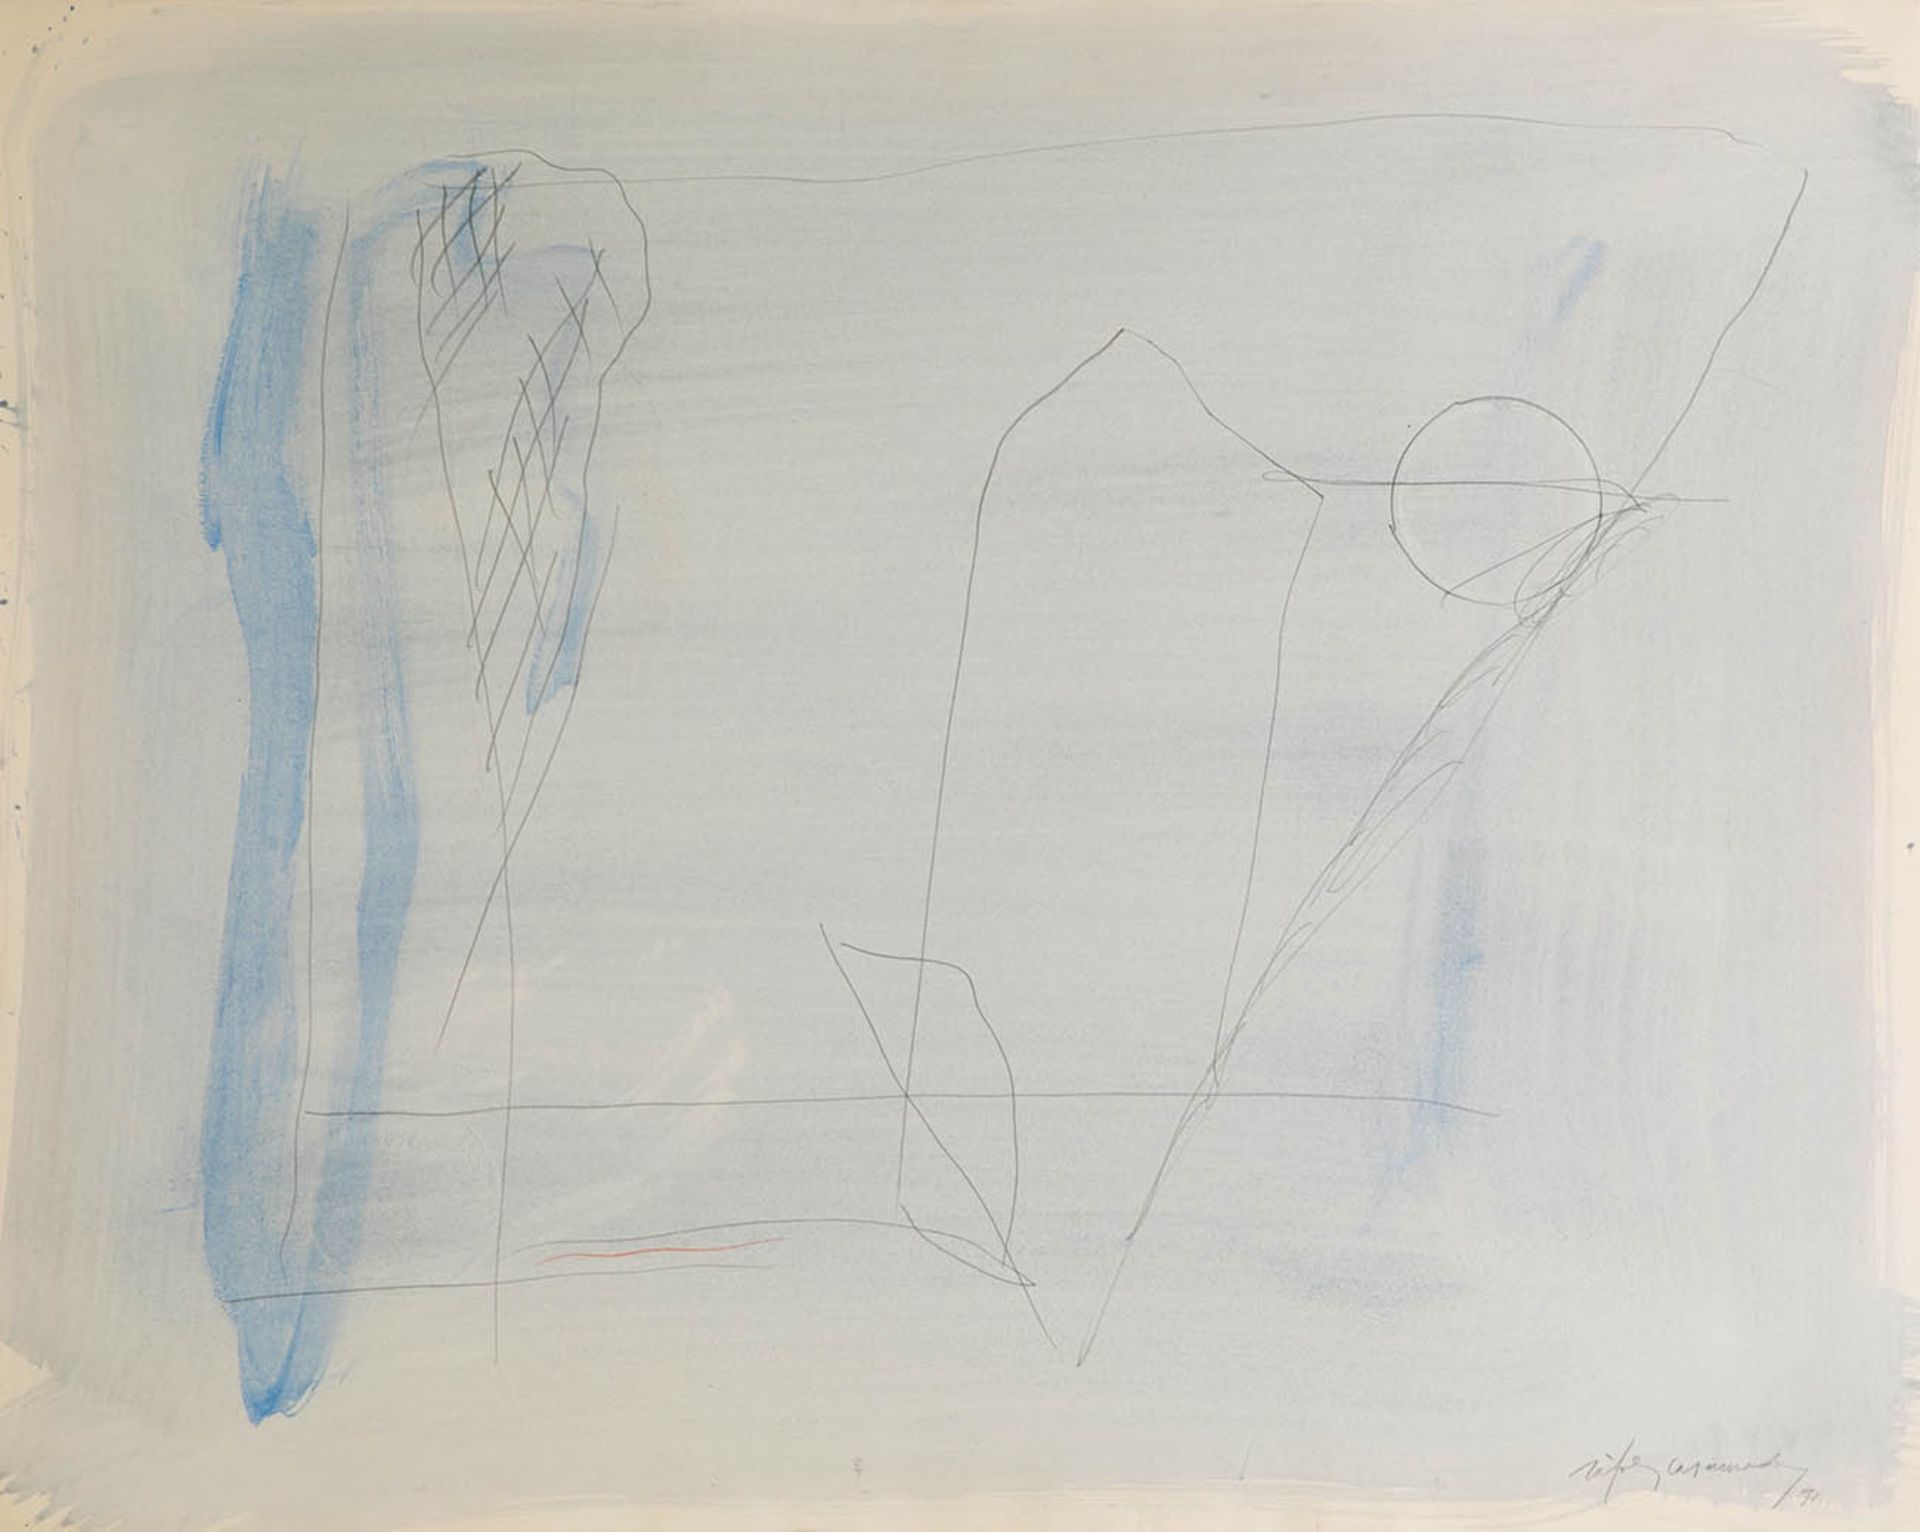 ALBERT RÀFOLS CASAMADA (Barcelona, 1923-2009)."Noctur clar", 1991.Watercolour and pencils on paper